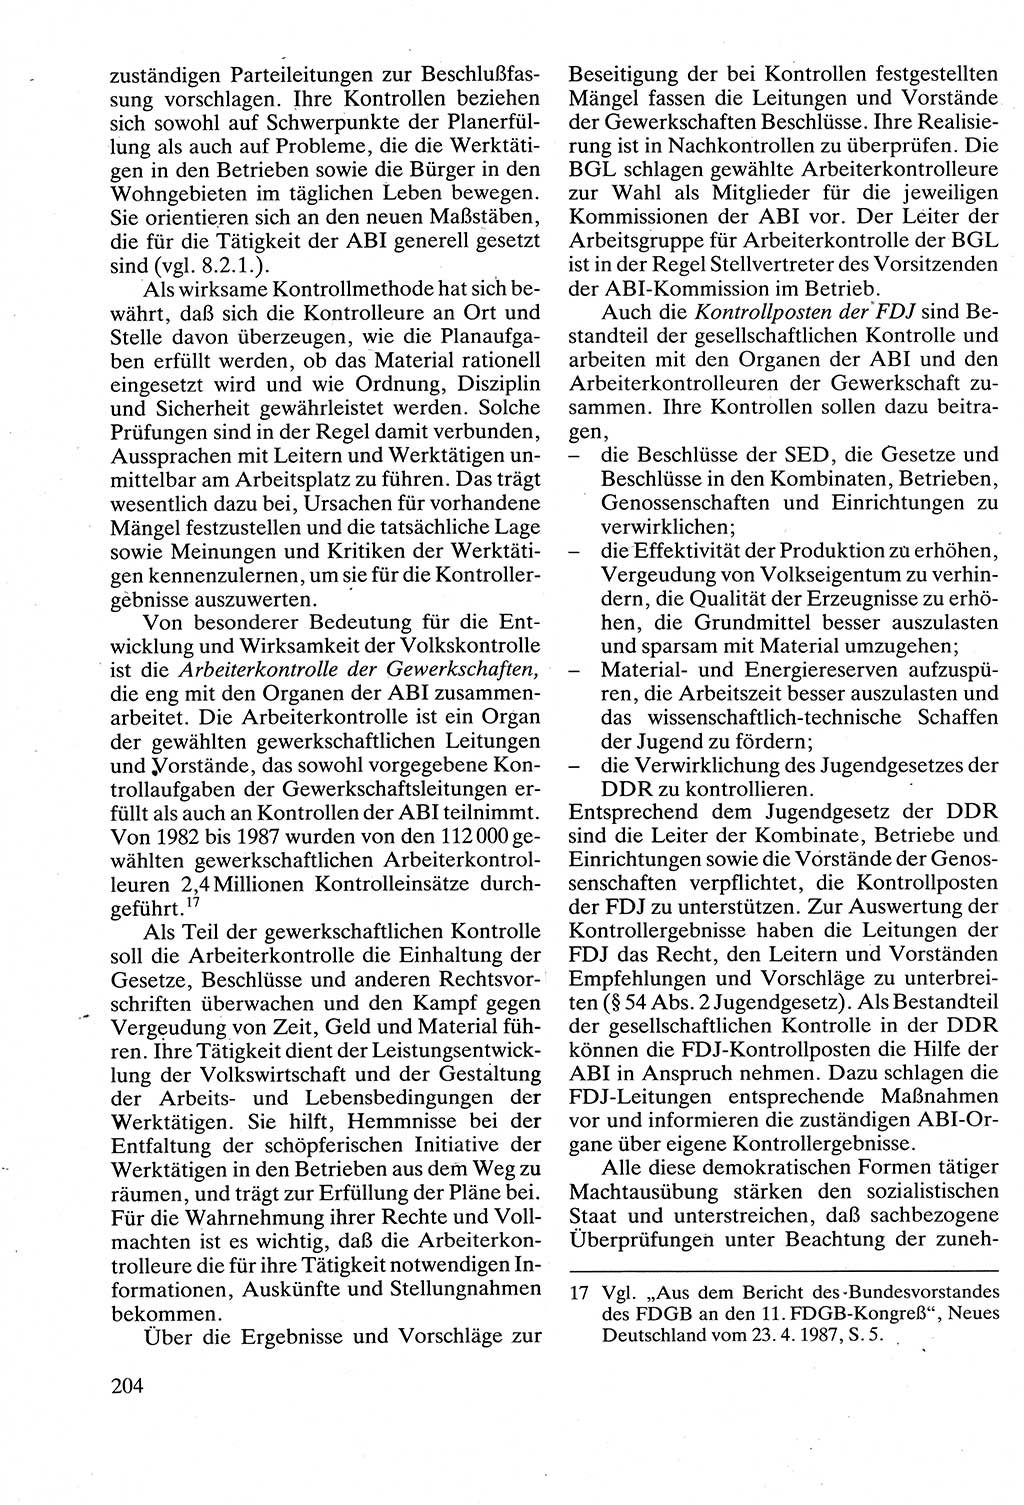 Verwaltungsrecht [Deutsche Demokratische Republik (DDR)], Lehrbuch 1988, Seite 204 (Verw.-R. DDR Lb. 1988, S. 204)